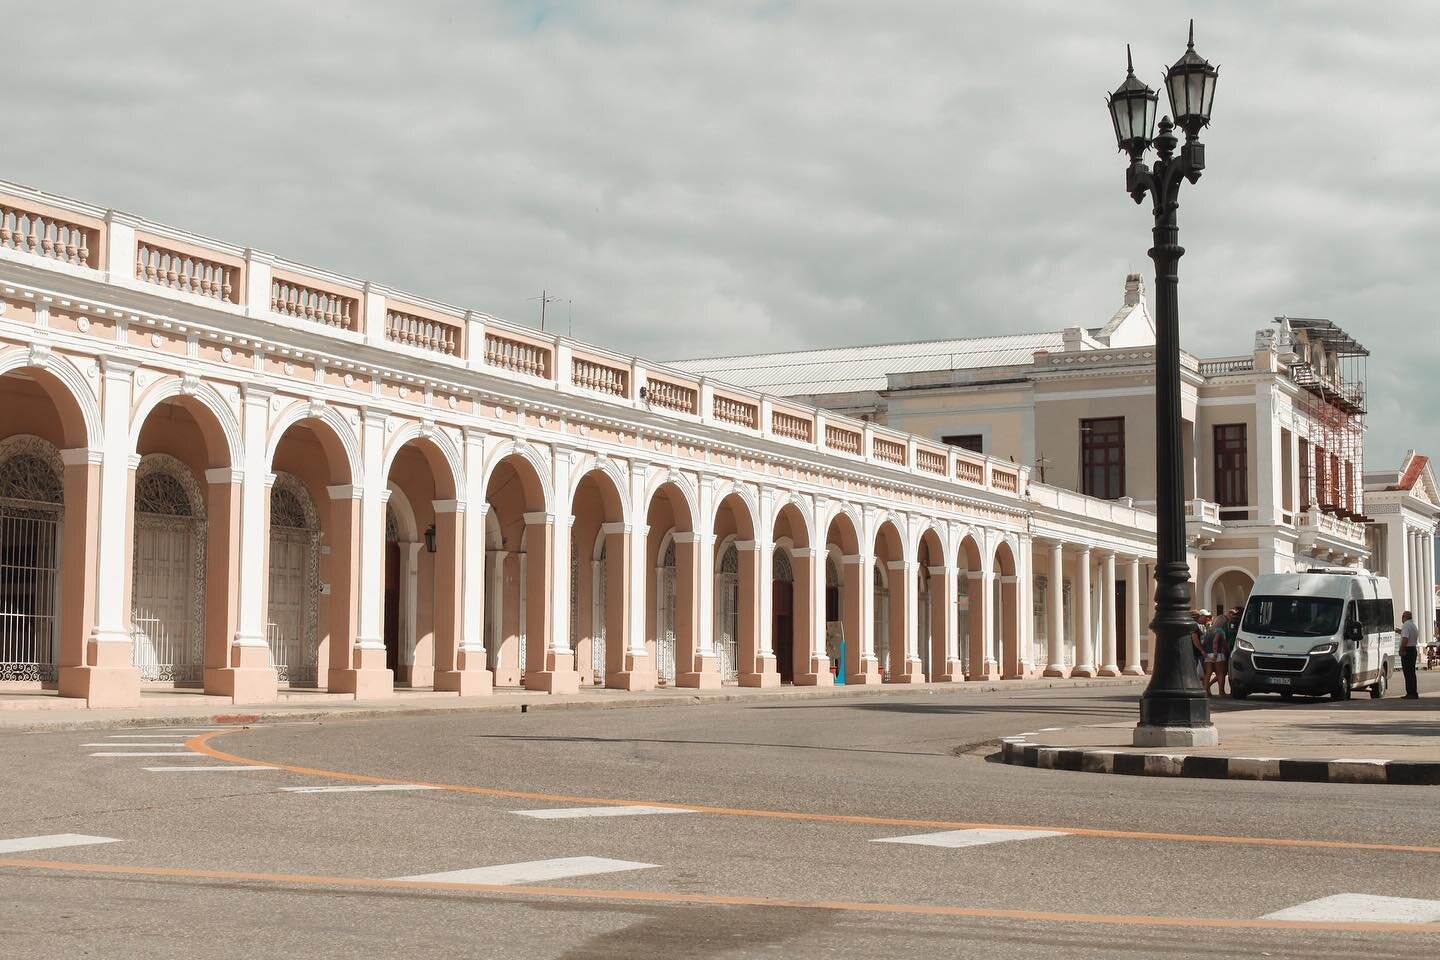 Centre of Cienfuegos, Cuba, 2018 🇨🇺